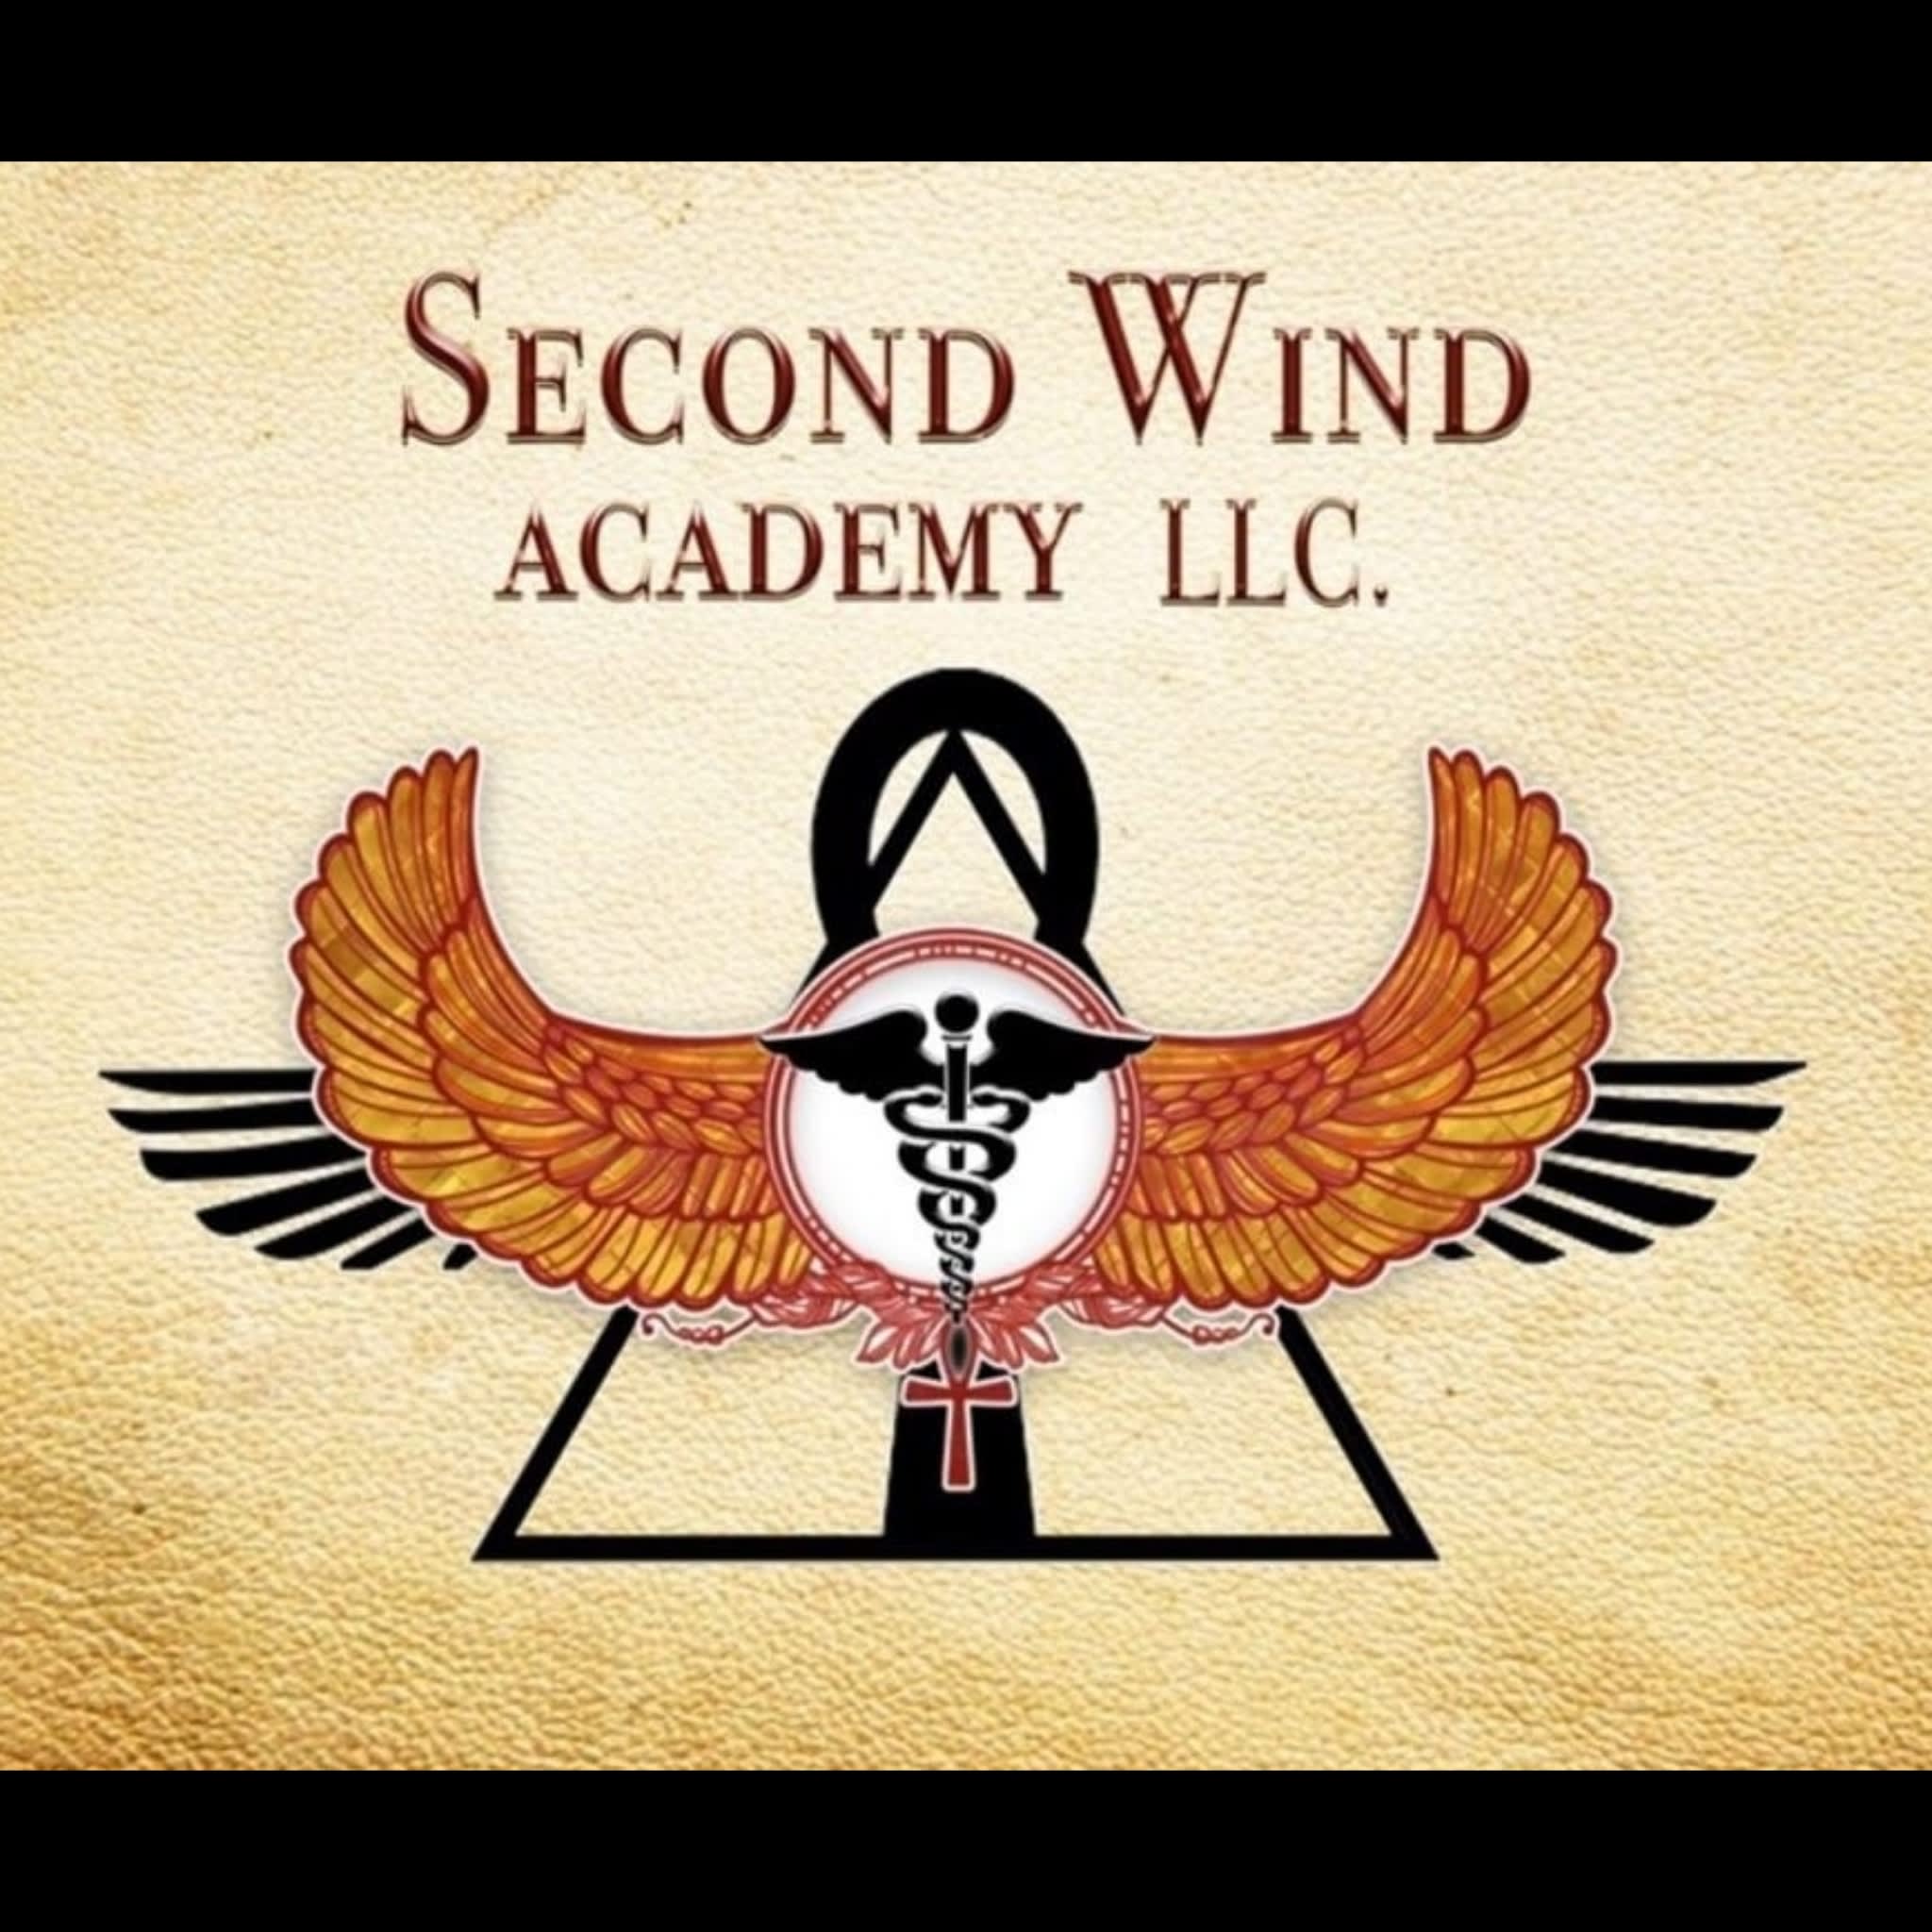 Second Wind Academy LLC